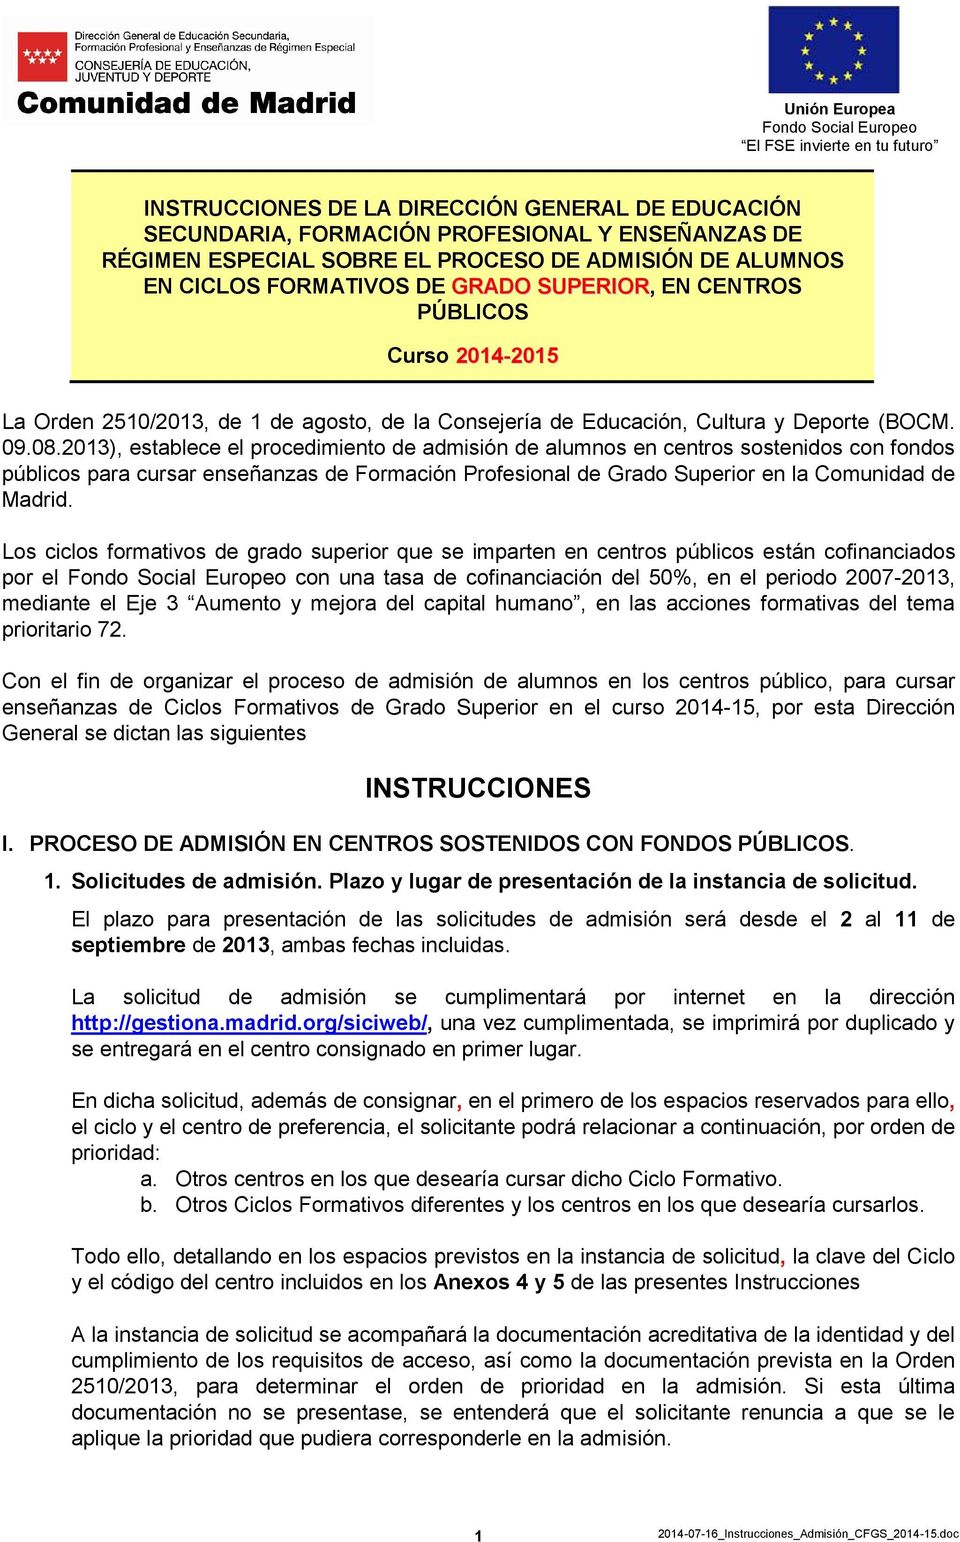 2013), establece el procedimiento de admisión de alumnos en centros sostenidos con fondos públicos para cursar enseñanzas de Formación Profesional de Grado Superior en la Comunidad de Madrid.